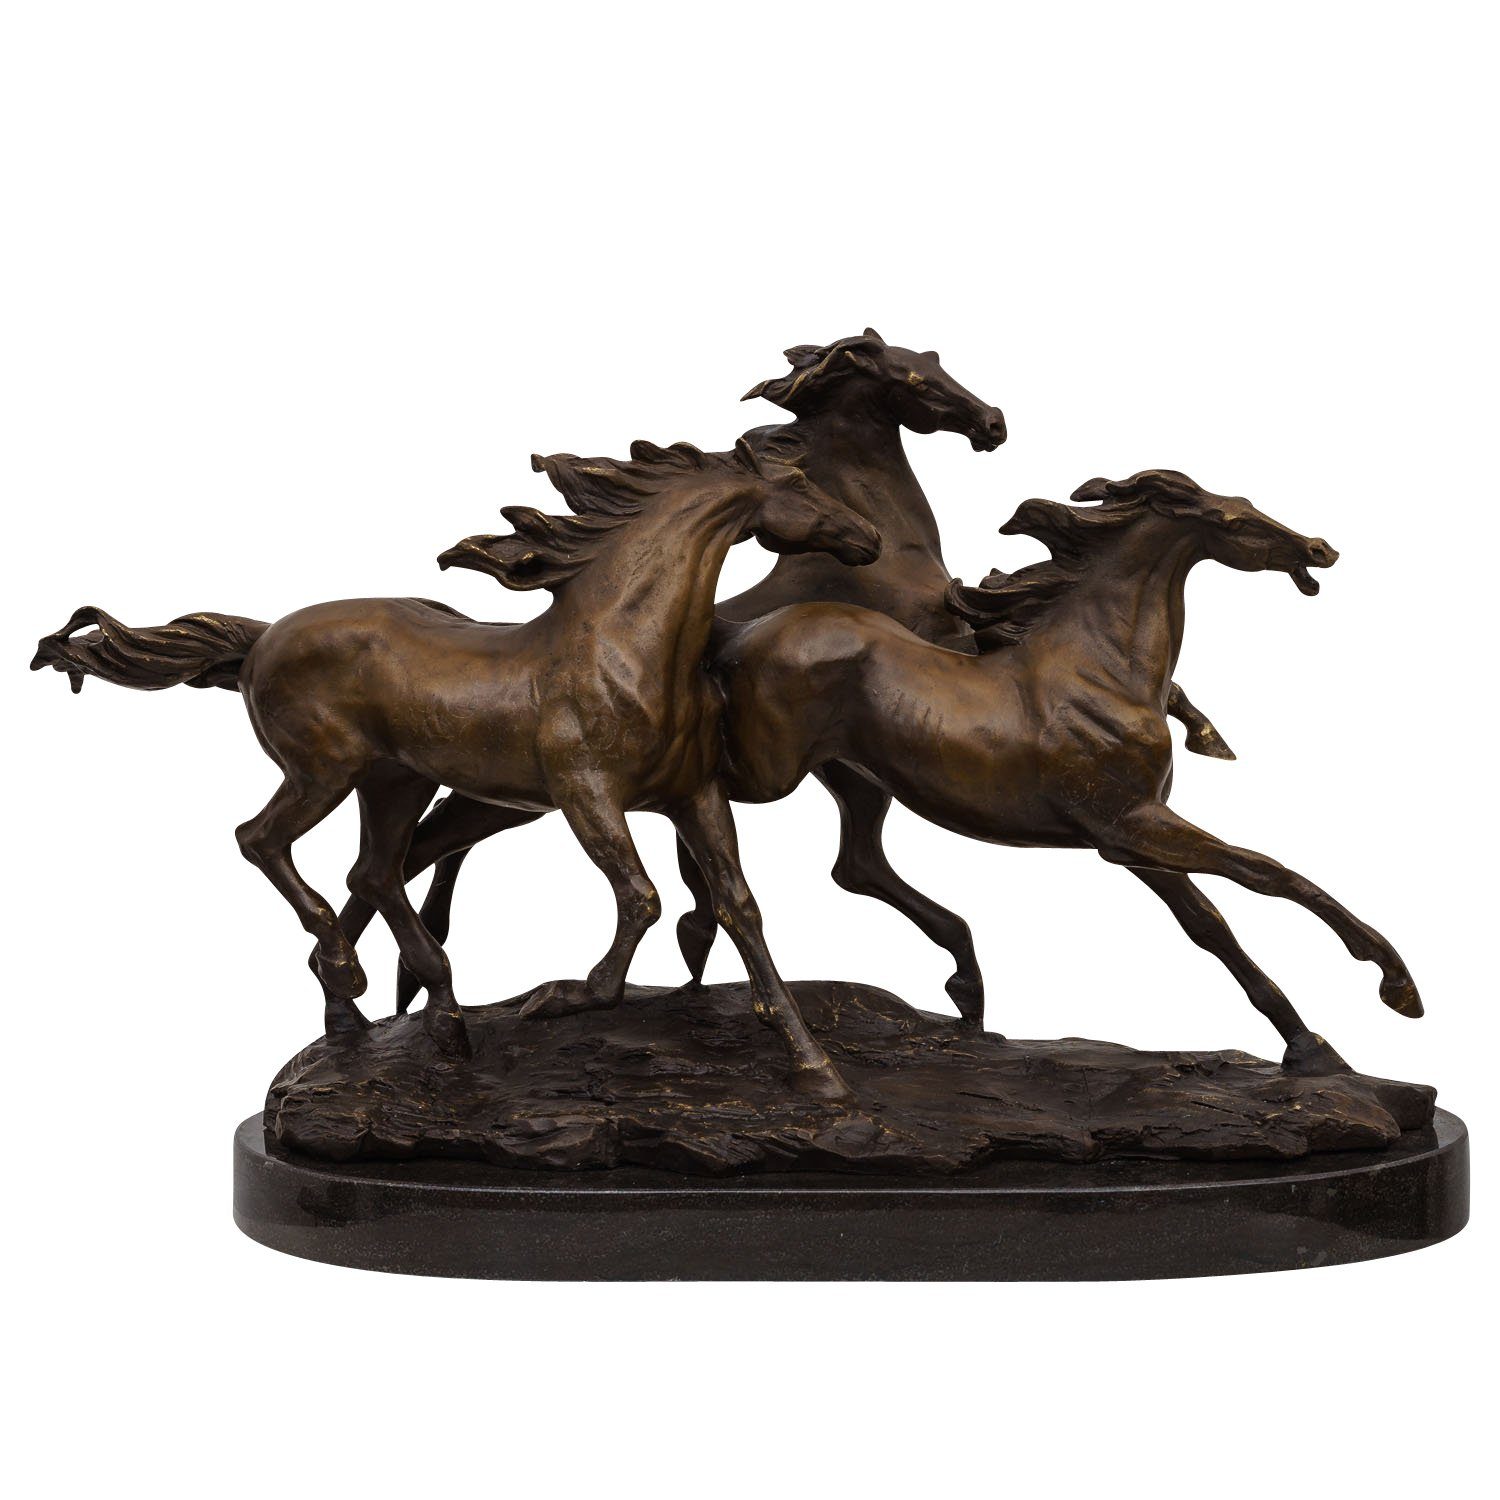 Skulptur »Bronzeskulptur 3 galoppierende Pferde Deko Moderne Skulptur Antik-Stil  45cm«